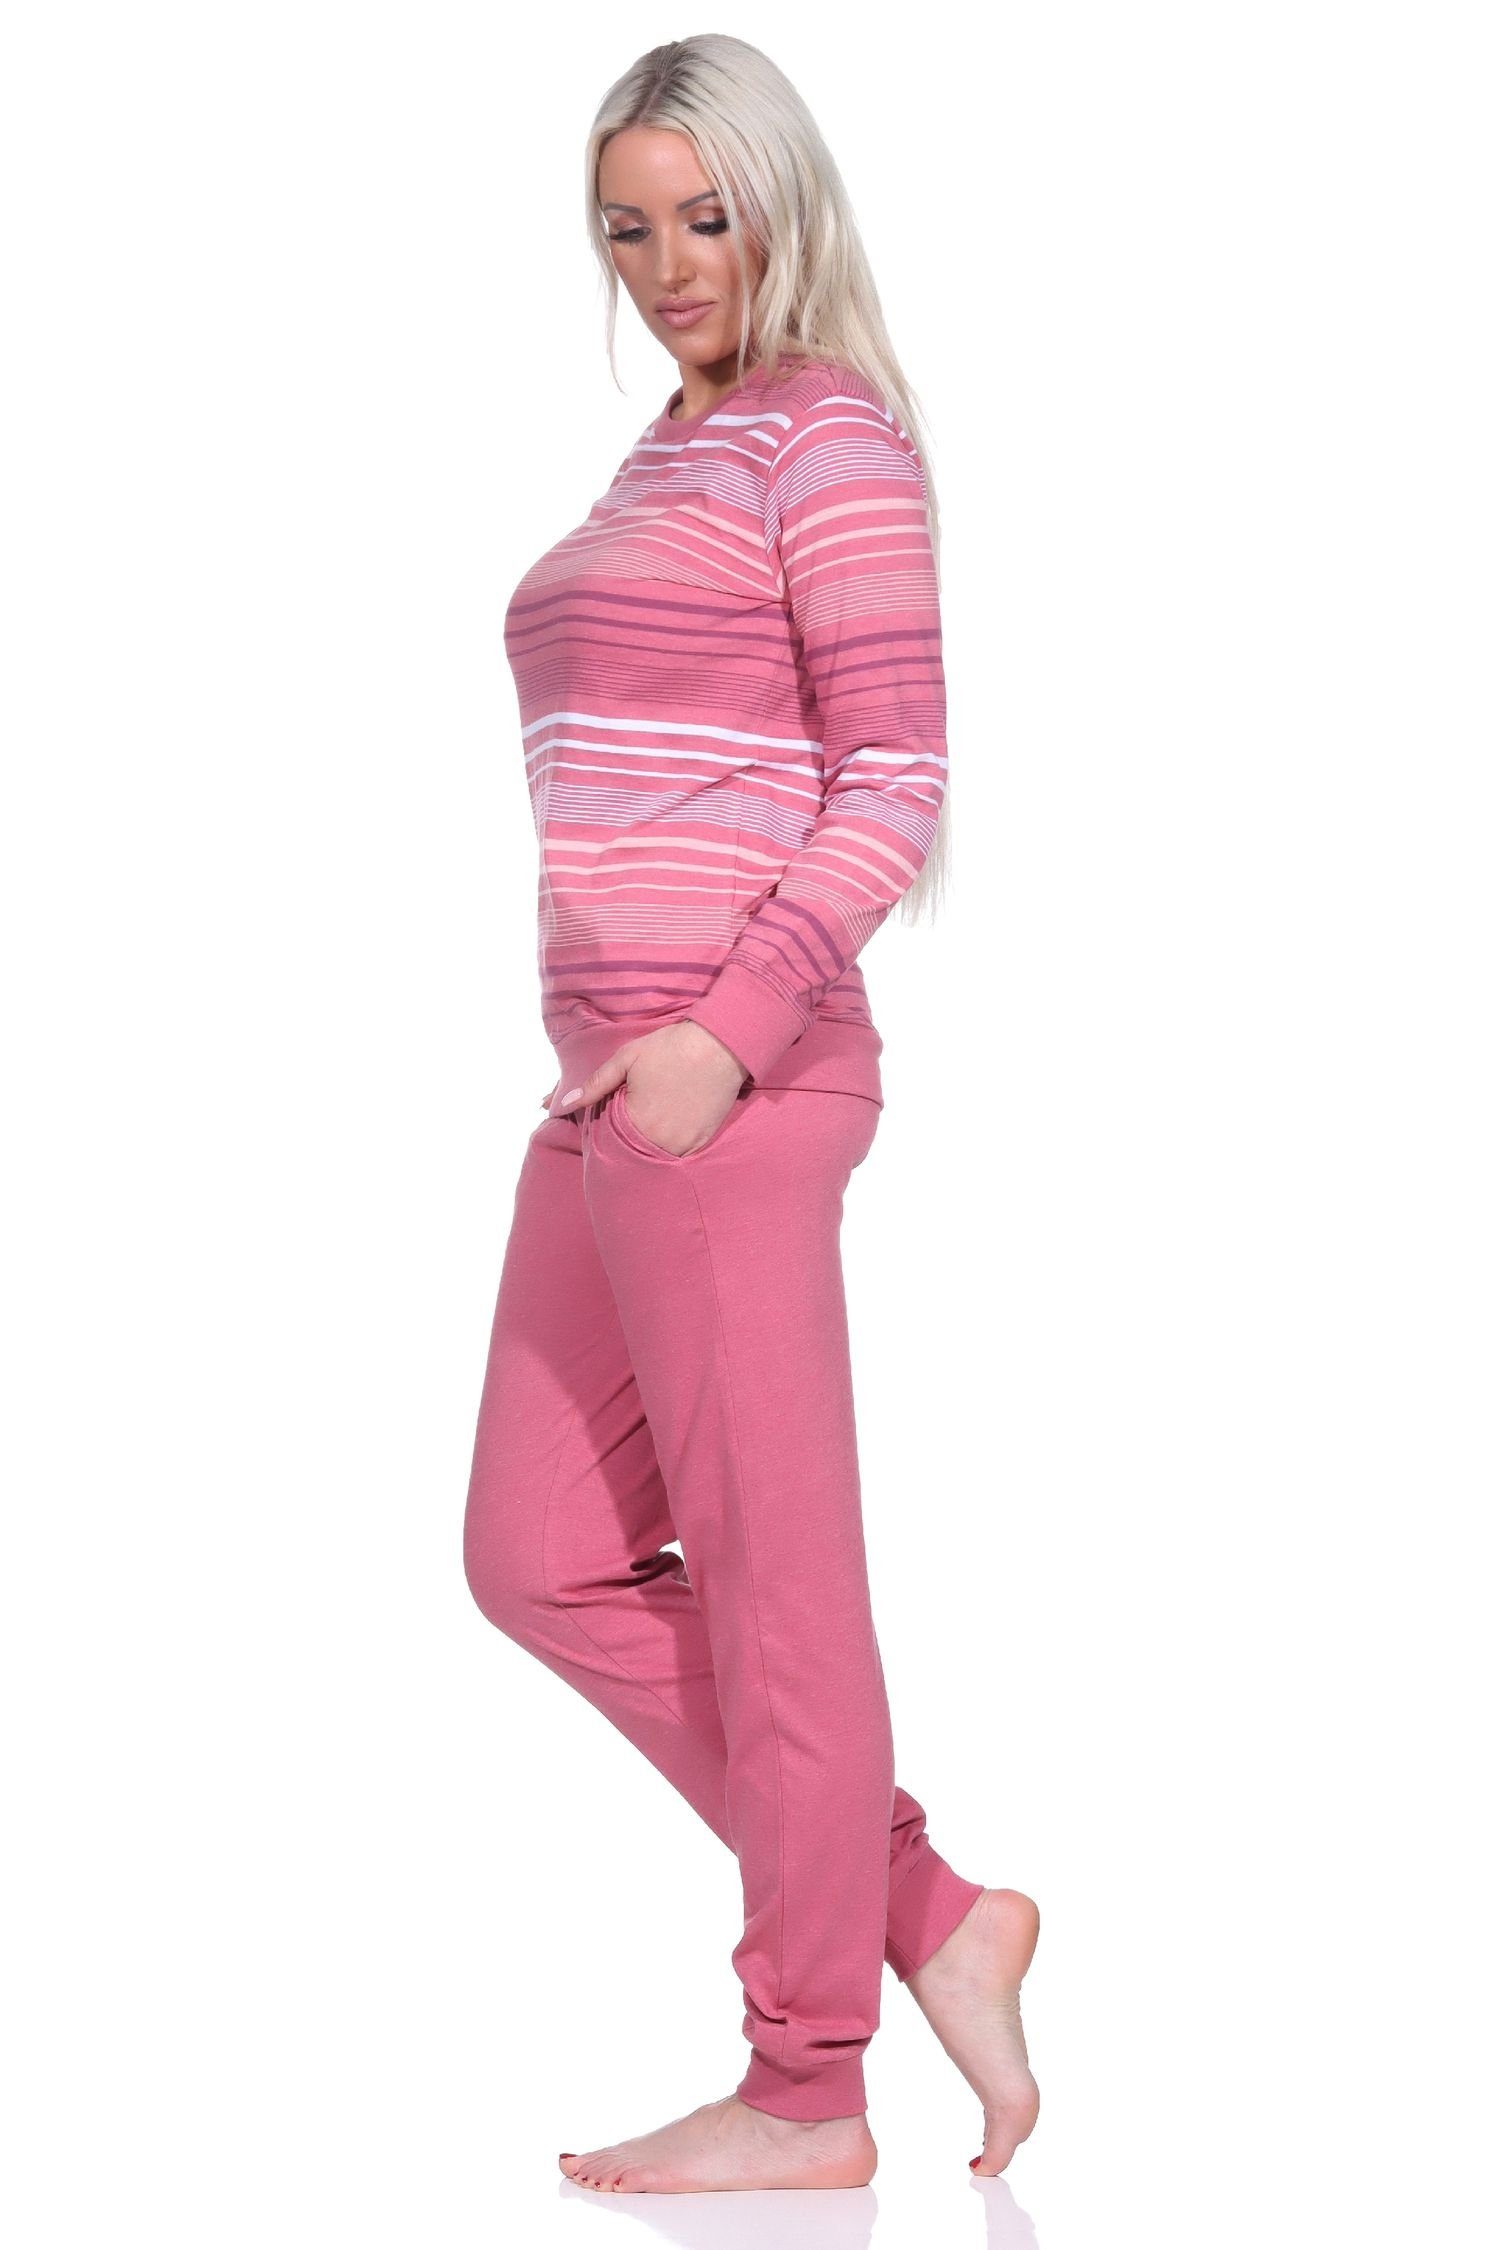 langarm in Damen Streifenoptik mit altrose Bündchen Schlafanzug Pyjama Pyjama Normann